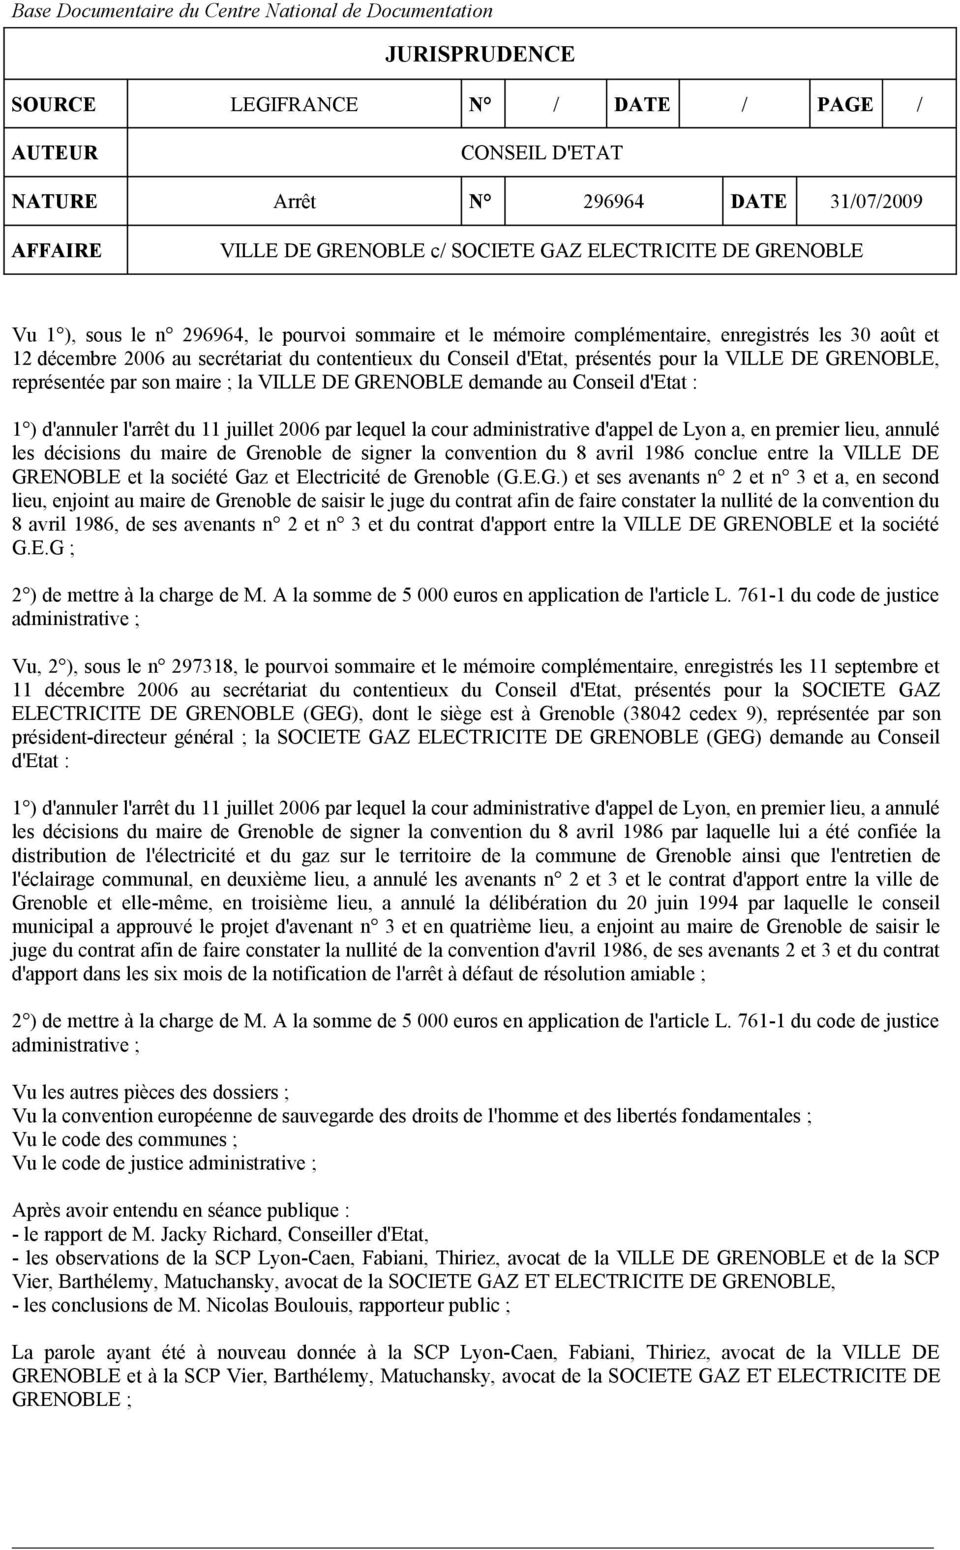 d'etat, présentés pour la VILLE DE GRENOBLE, représentée par son maire ; la VILLE DE GRENOBLE demande au Conseil d'etat : 1 ) d'annuler l'arrêt du 11 juillet 2006 par lequel la cour administrative